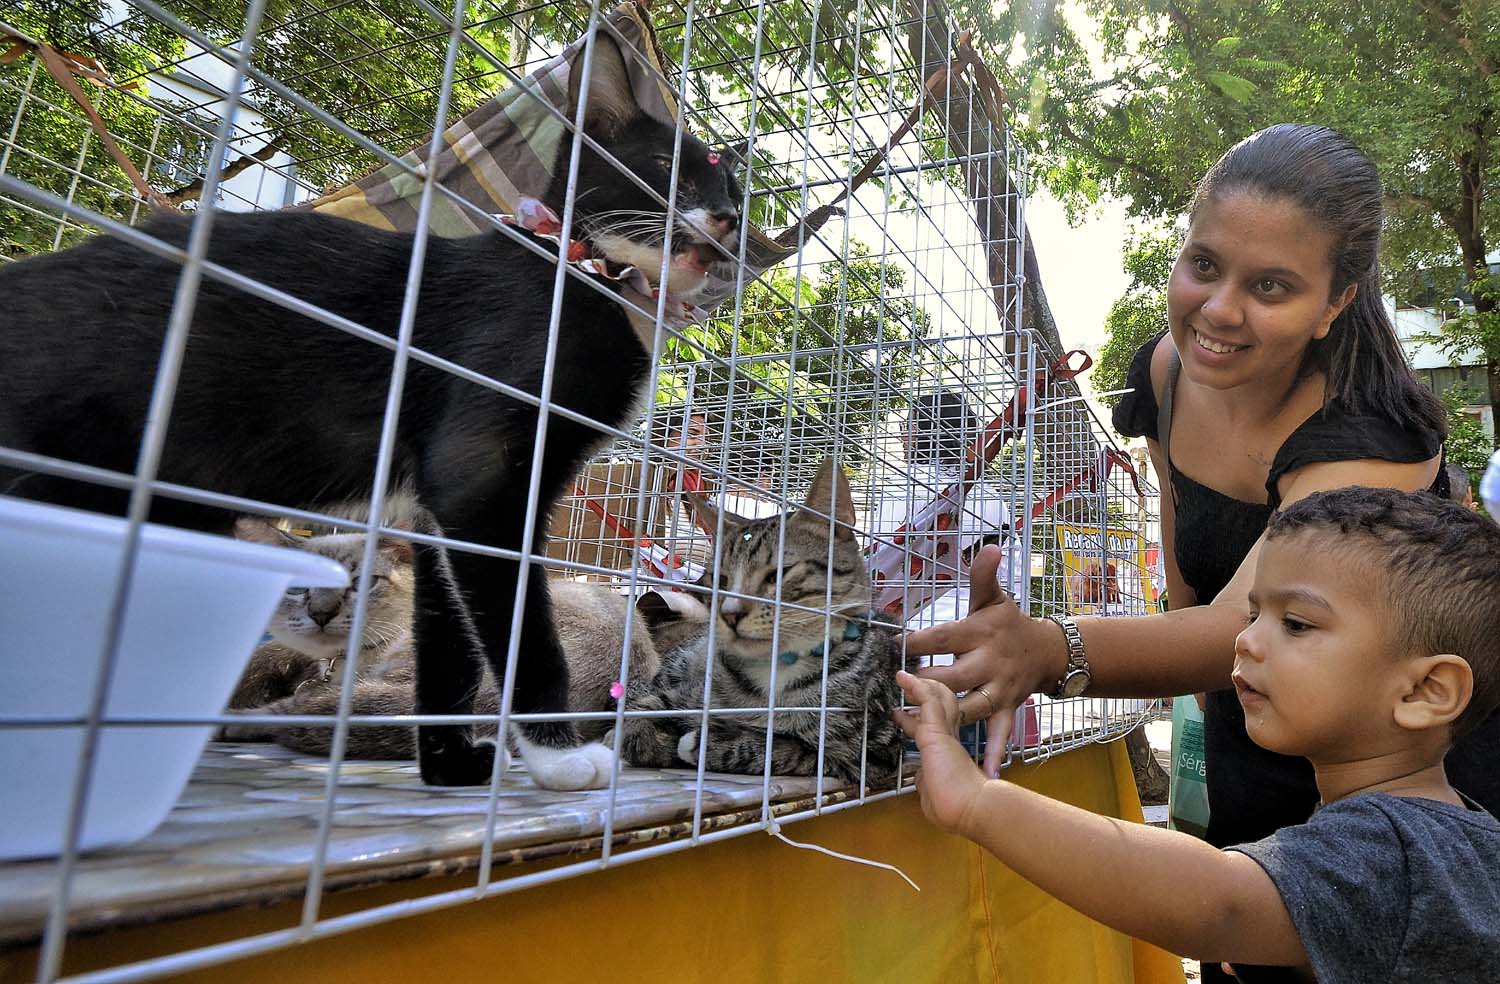 Nova Iguaçu realiza mais uma edição da Feira de Adoção de Cães e Gatos neste sábado (21)